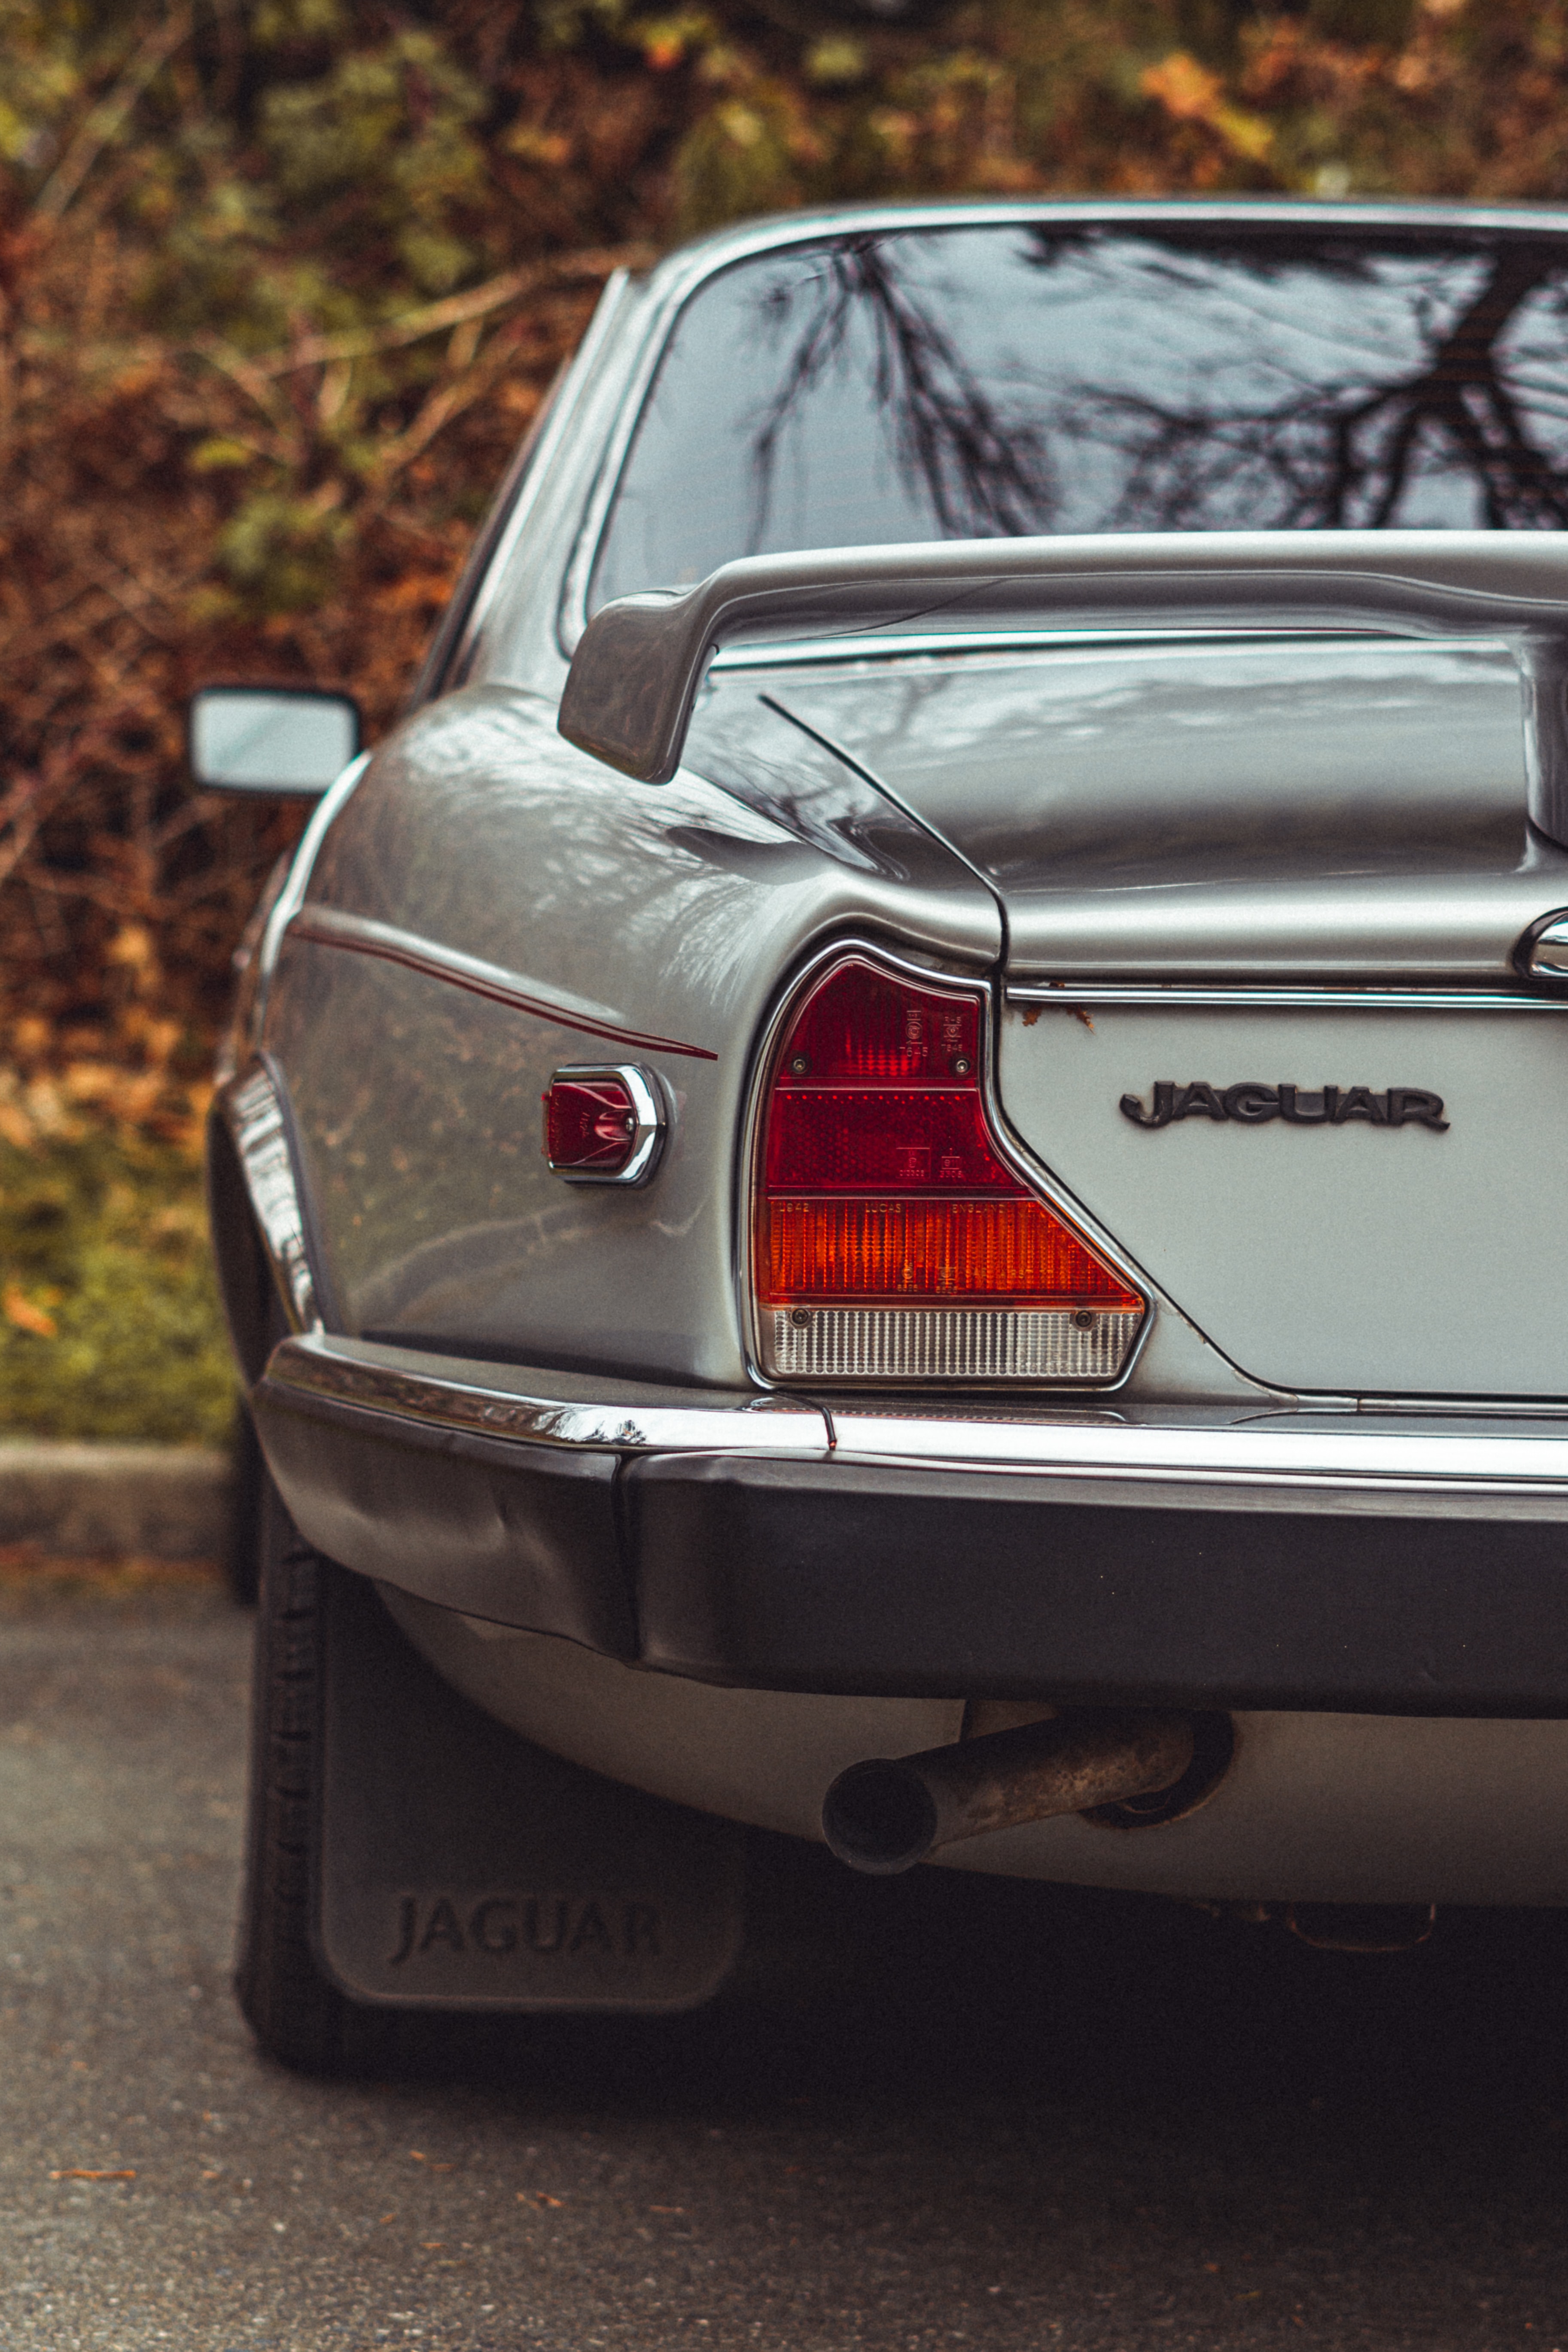 jaguar, cars, car, machine, vintage, back view, rear view, retro HD for desktop 1080p